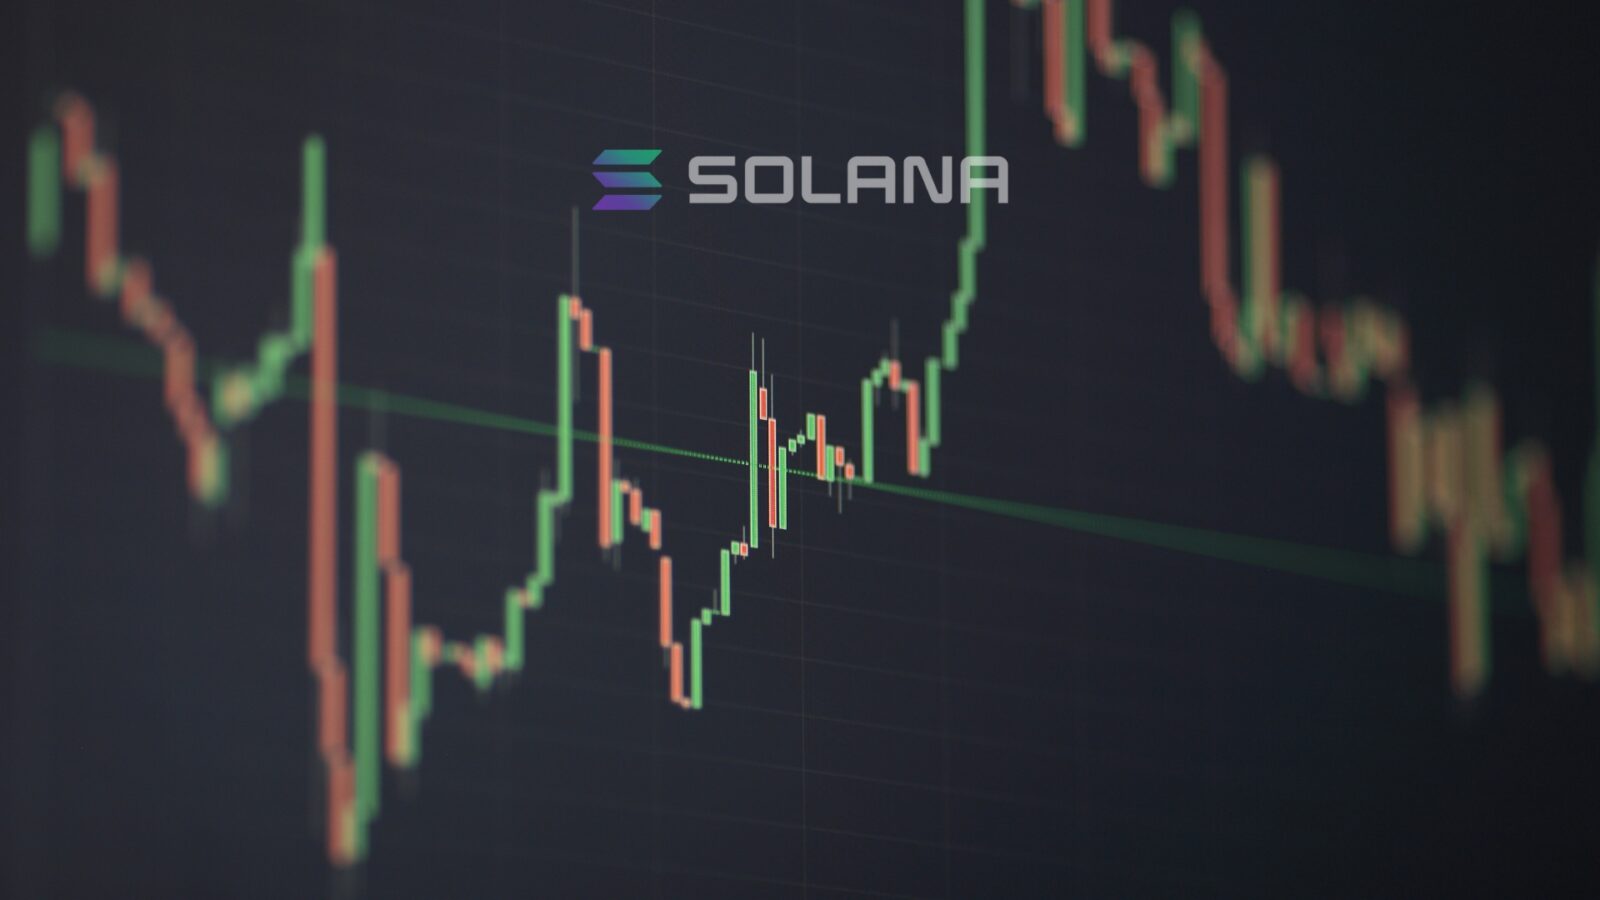 Solana NFT Market Booms: $5 Billion in Sales Volume Achieved